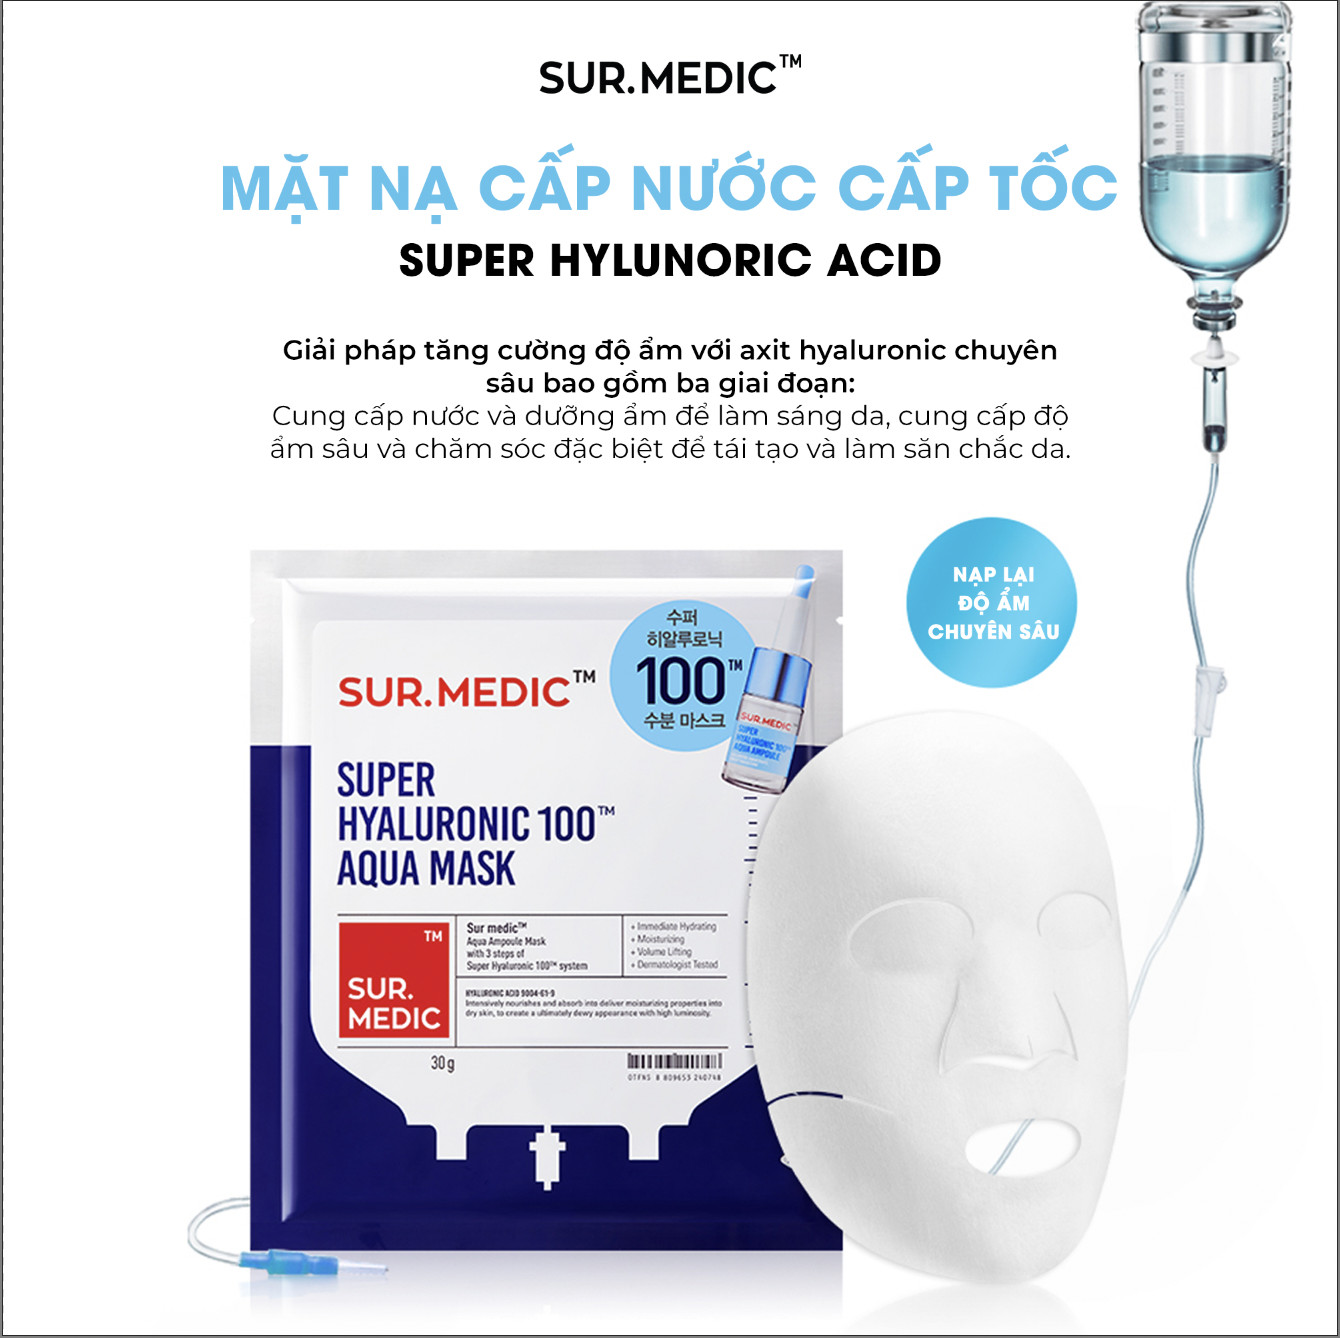 Combo 10 Mặt Nạ Hỗ Trợ Cấp Nước Sur.Medic Super Hyaluronic 100TM Aqua Mask  30g